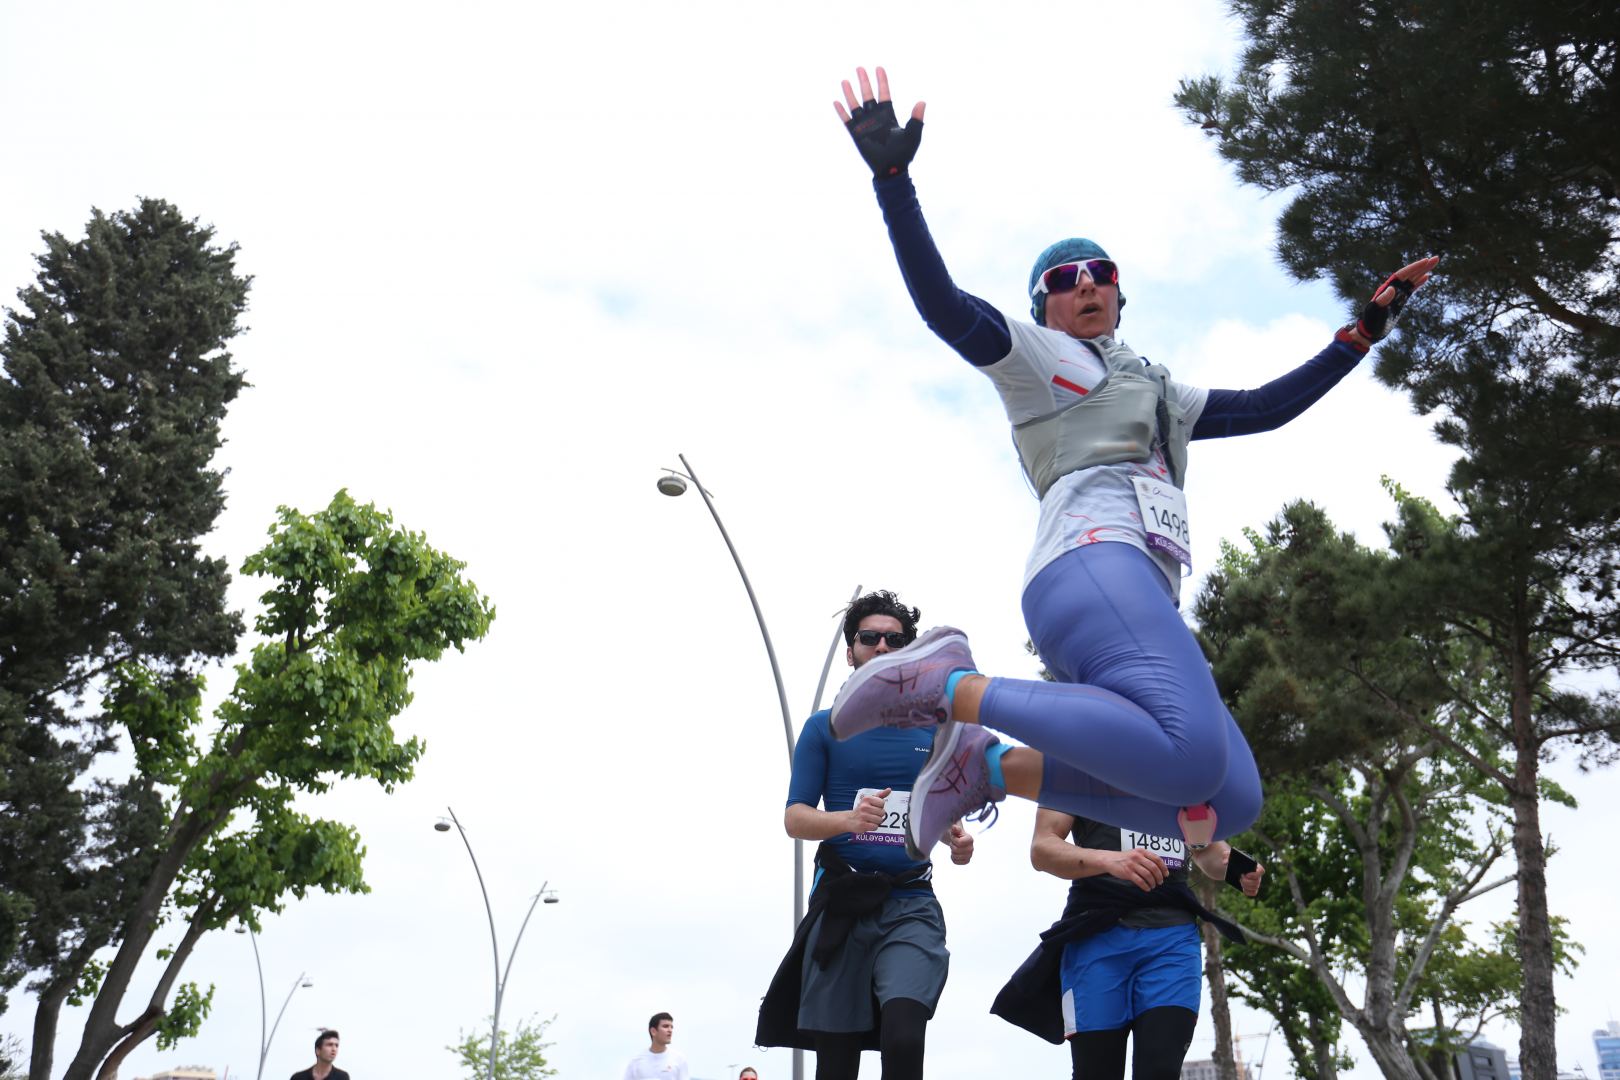 Яркий праздник спорта: Марафон «Победи ветер» в Баку (ФОТО)